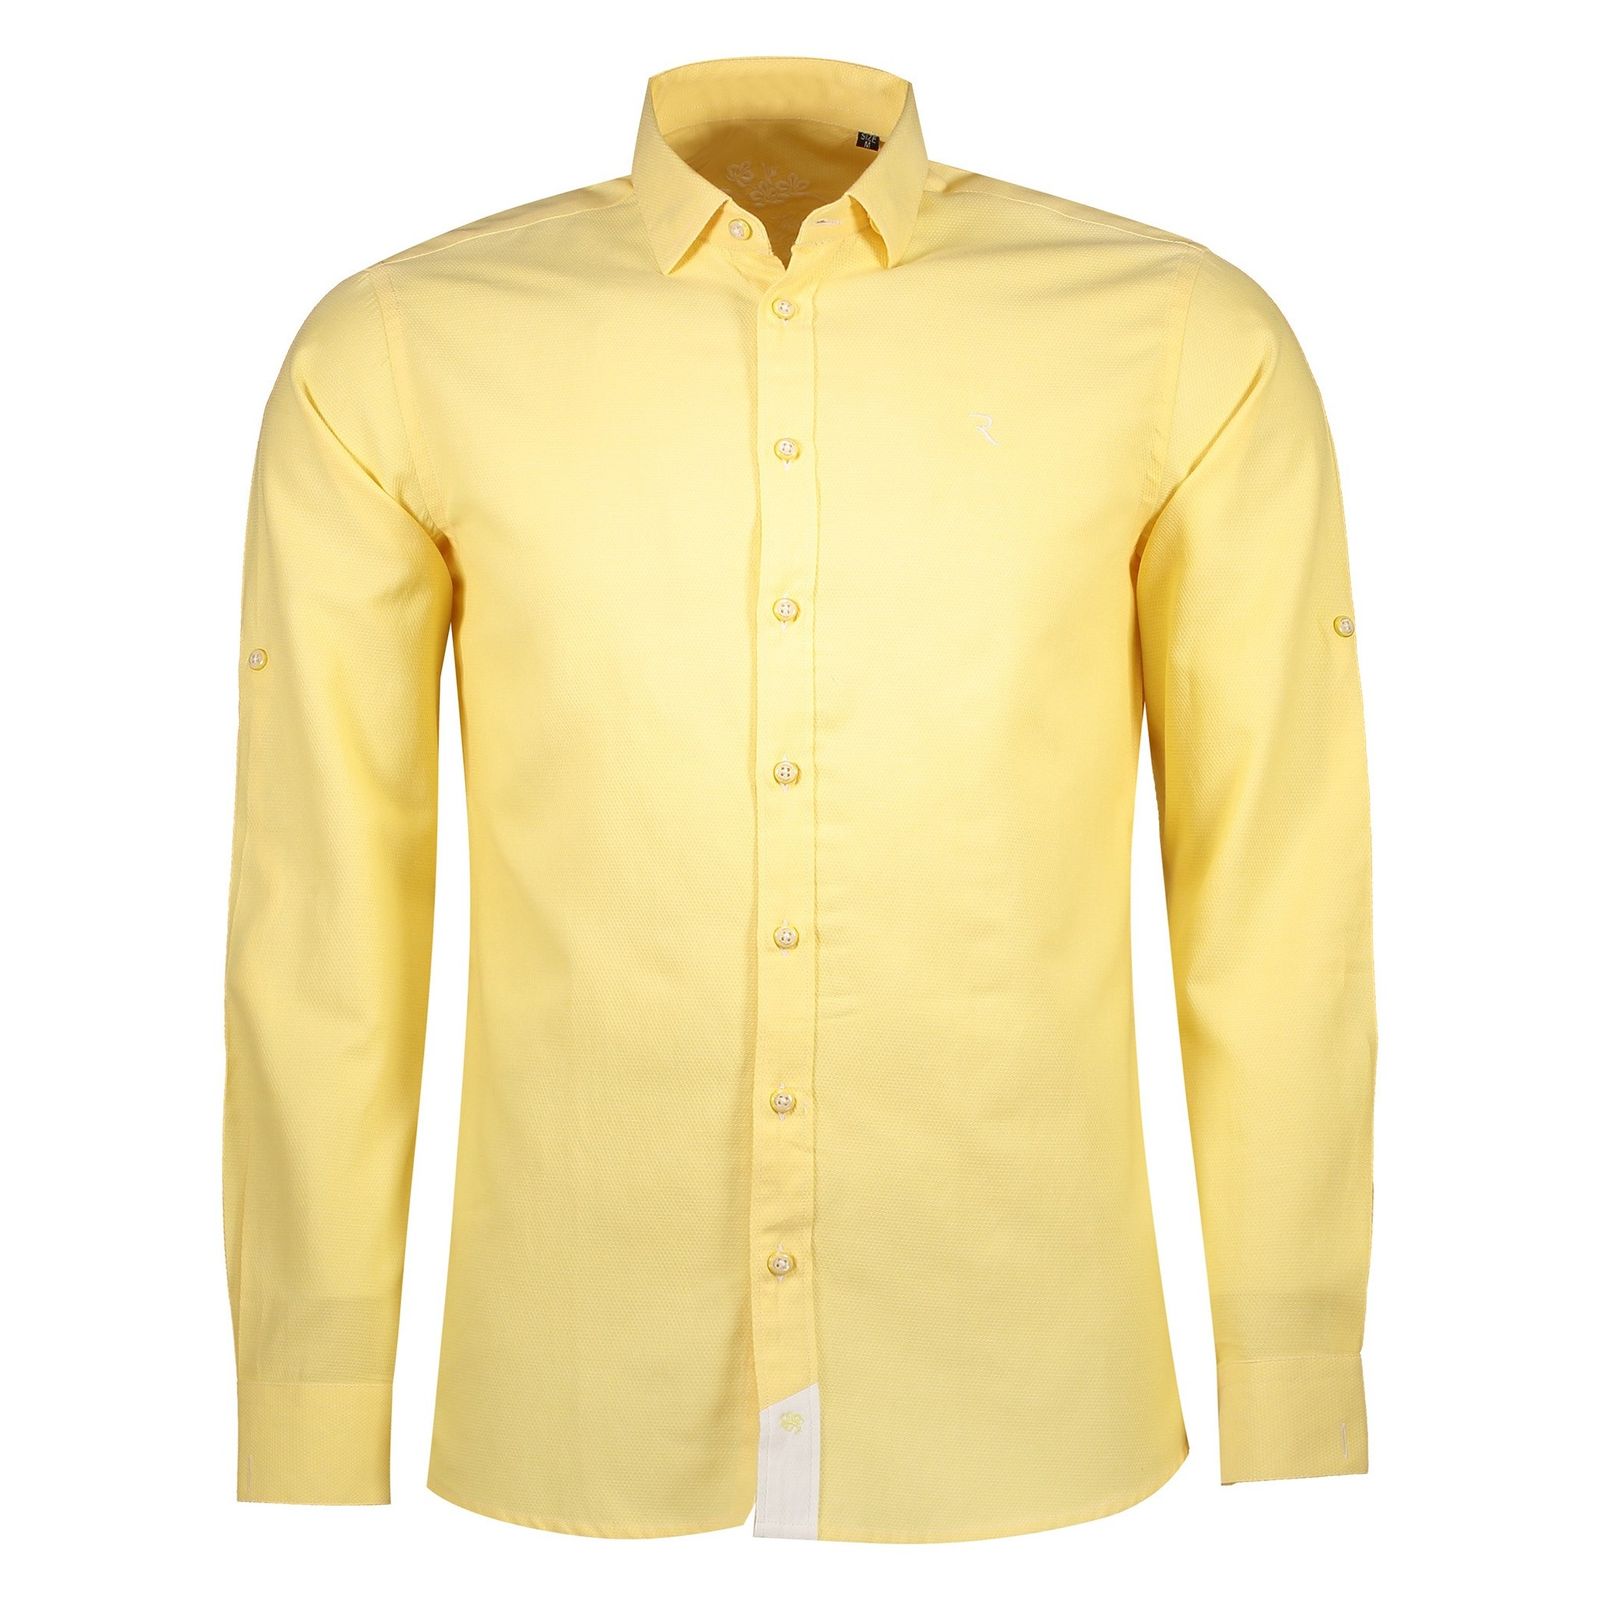 پیراهن نخی یقه برگردان مردانه - رونی - زرد - 2